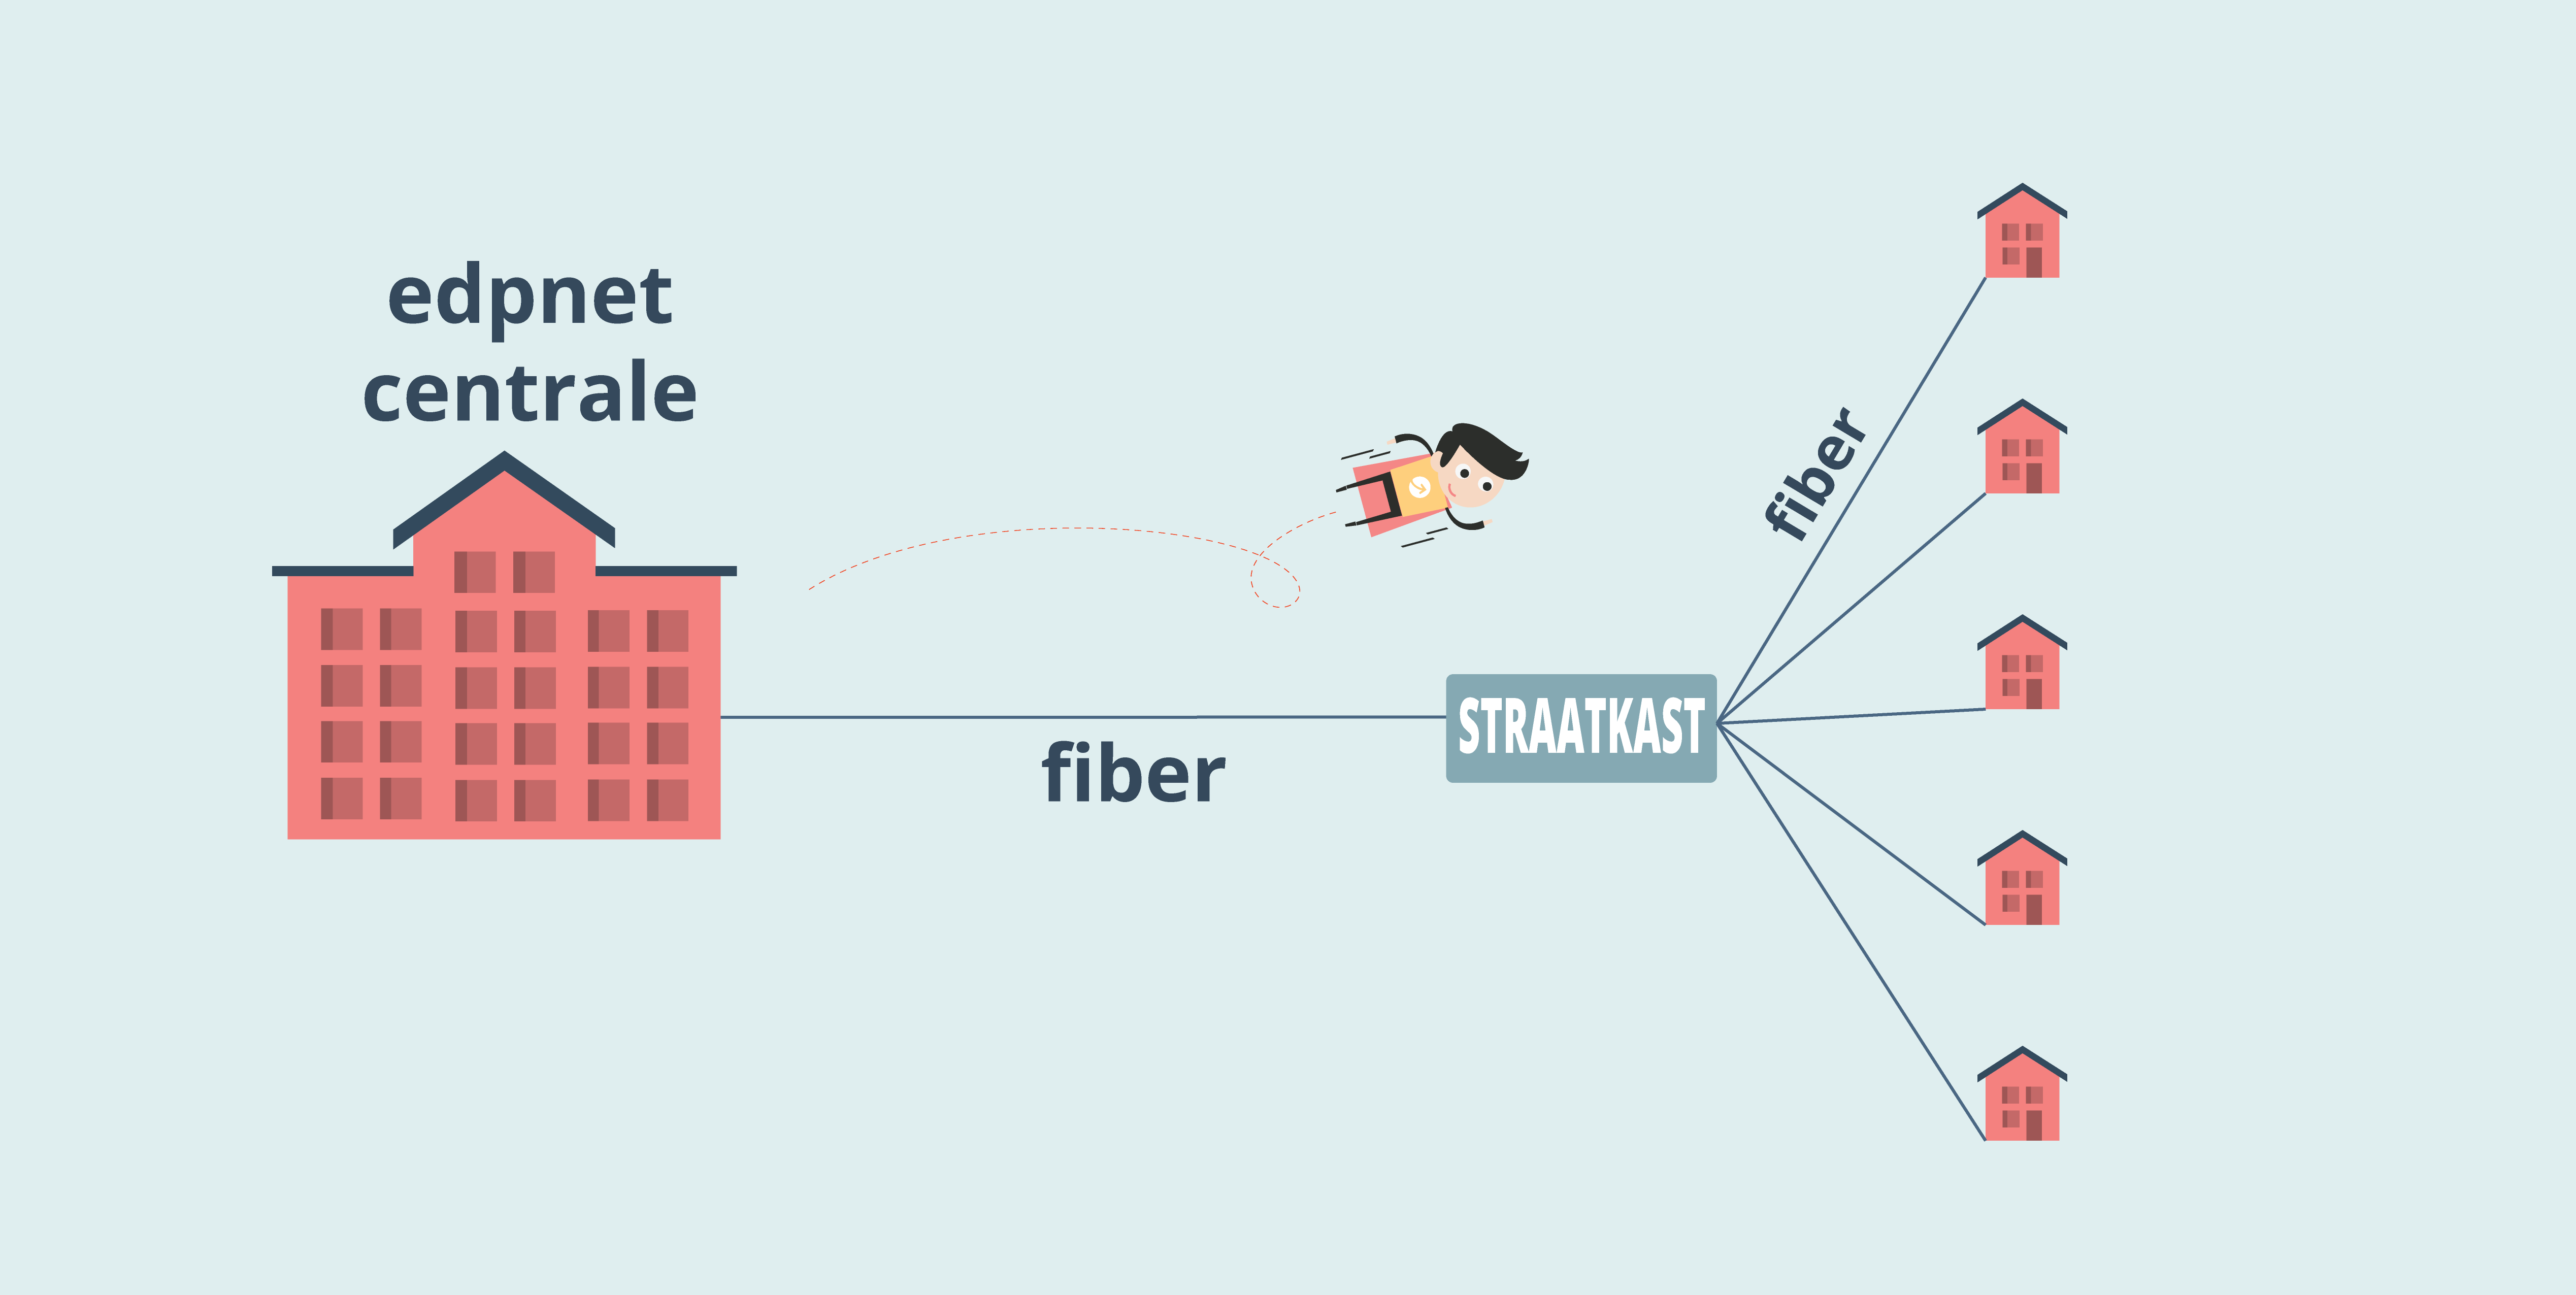 Hoe ziet het edpnet fiber netwerk er uit